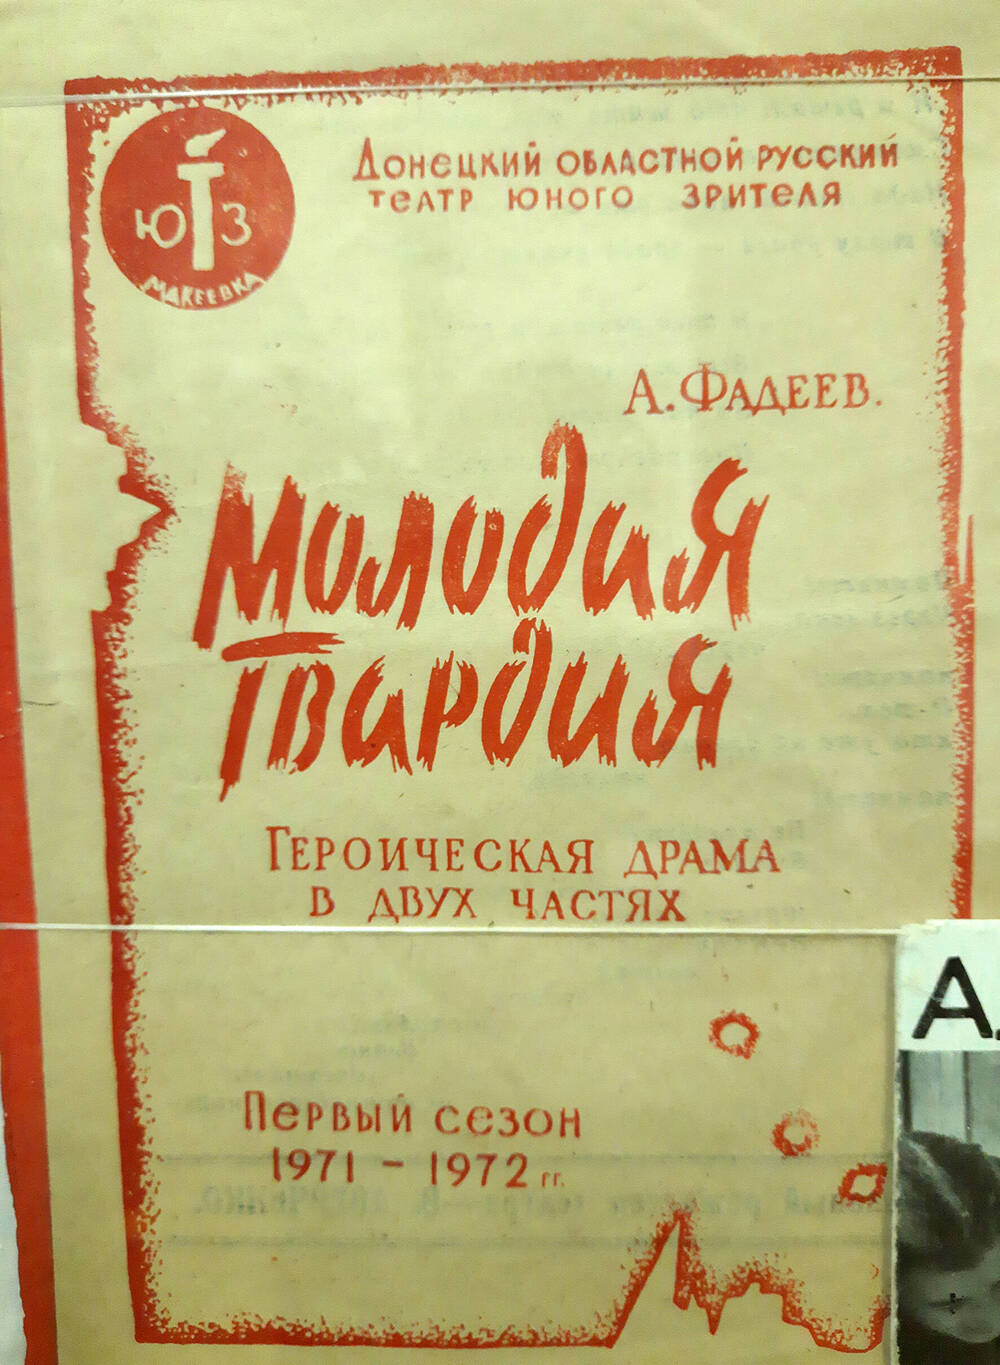 Программа к спектаклю «Молодая гвардия» театра юного зрителя г.Донецк 1971-72гг.